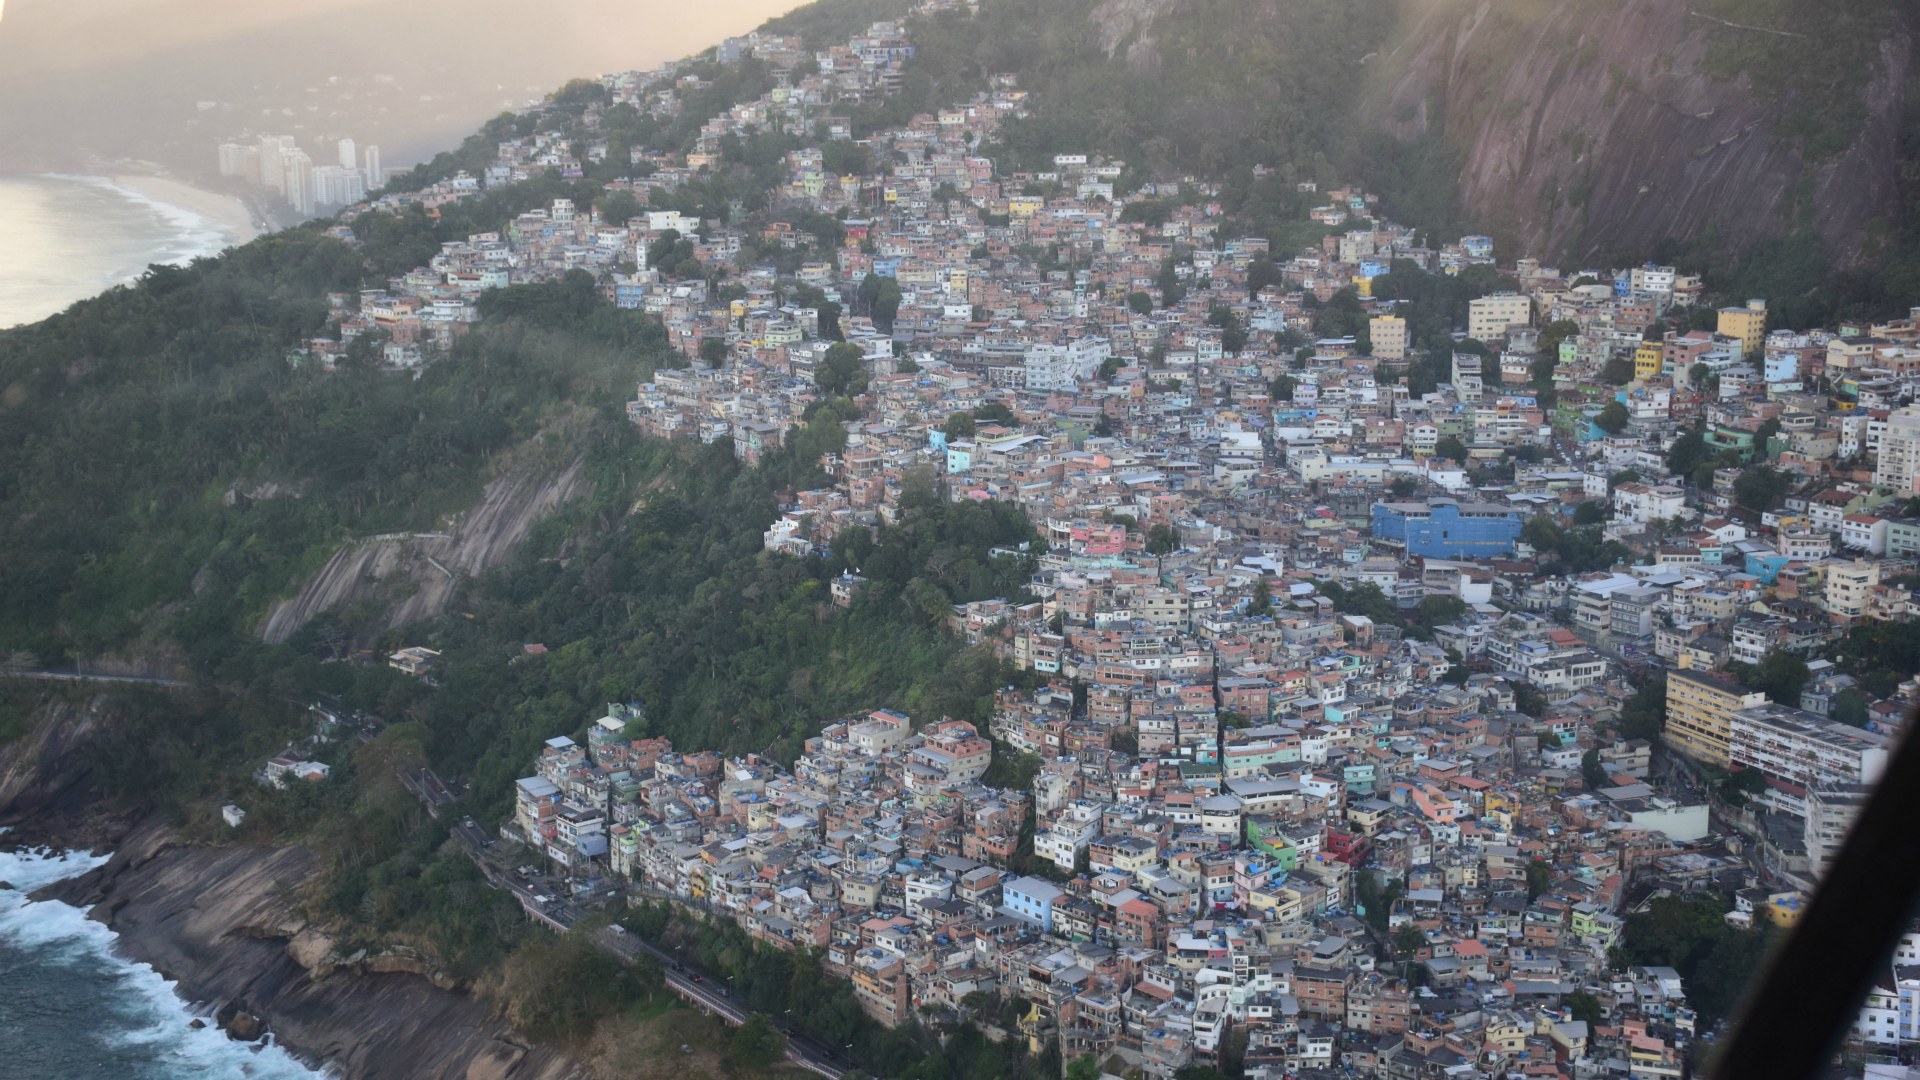 Vidigal Favela, Rio de Janeiro